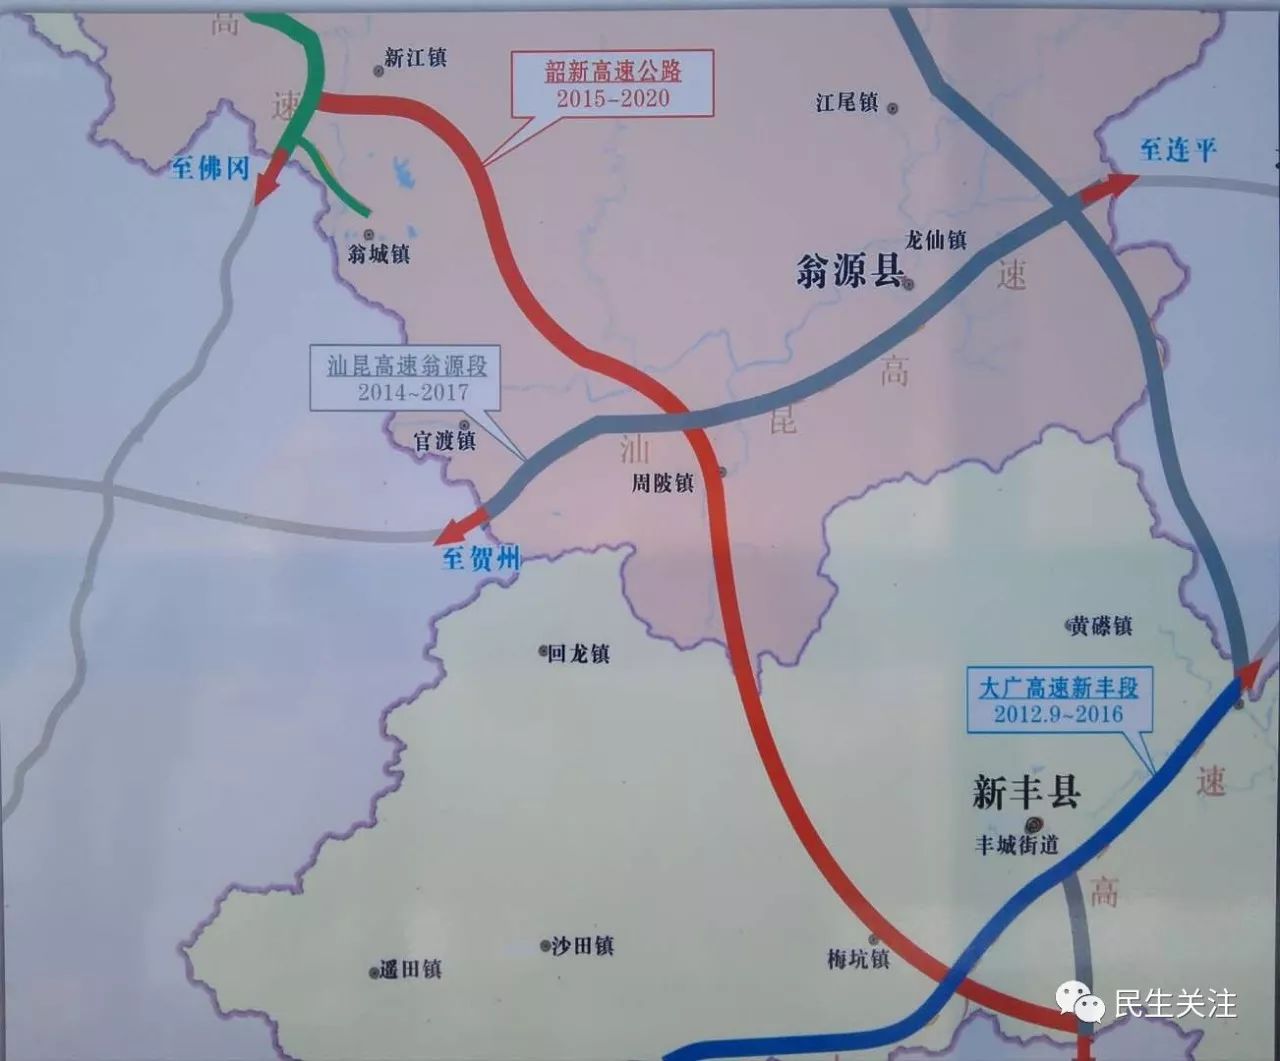 1公里的新江镇上坝村,终点设在惠州市龙门县的蓝田乡,顺接武深高速